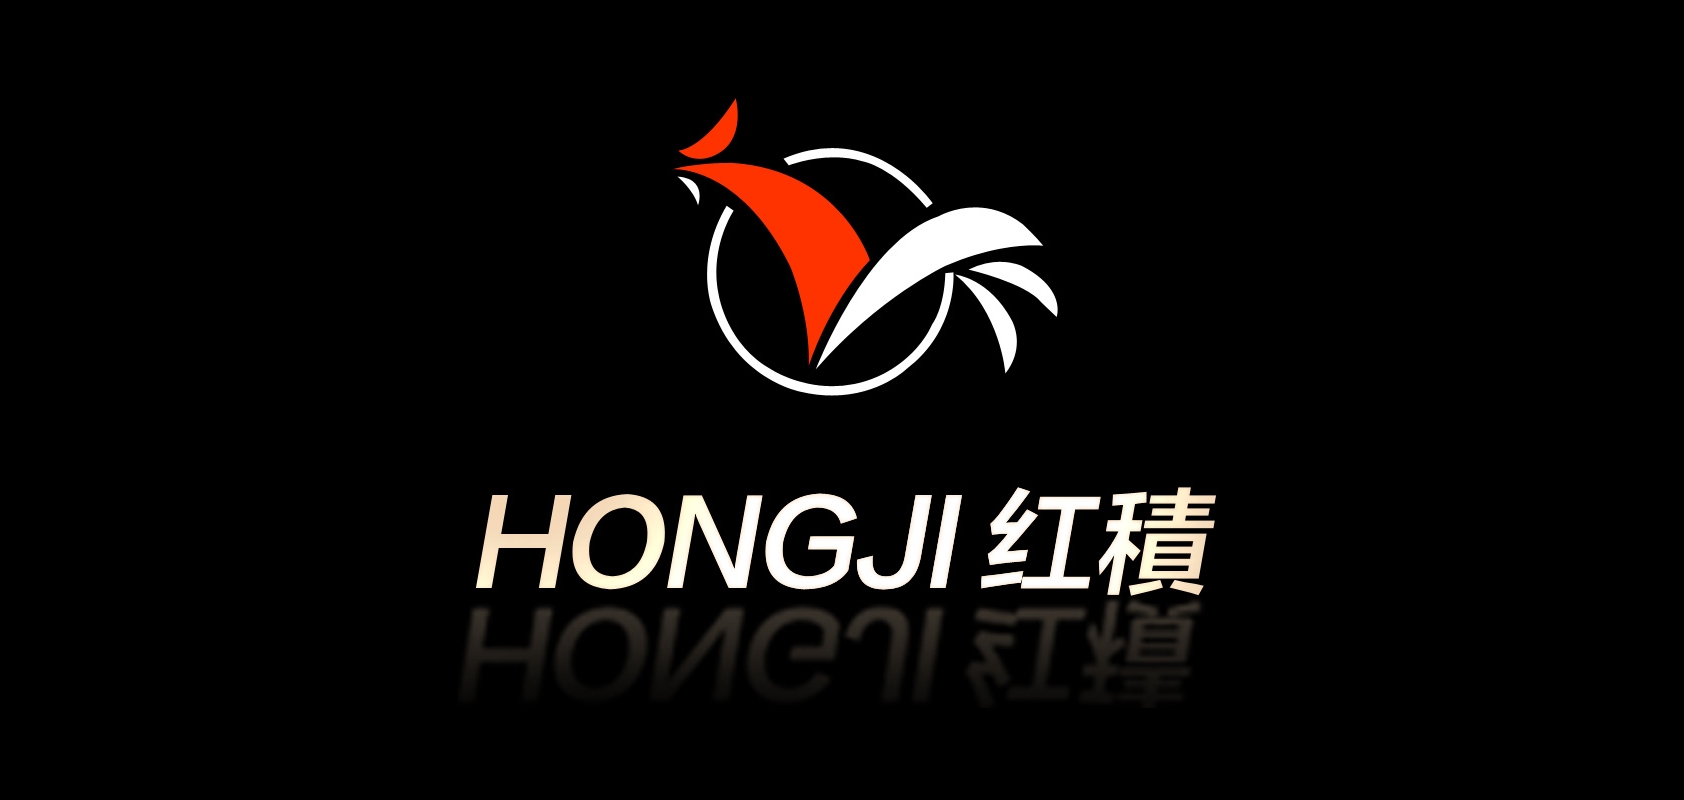 hongji是什么牌子_hongji品牌怎么样?